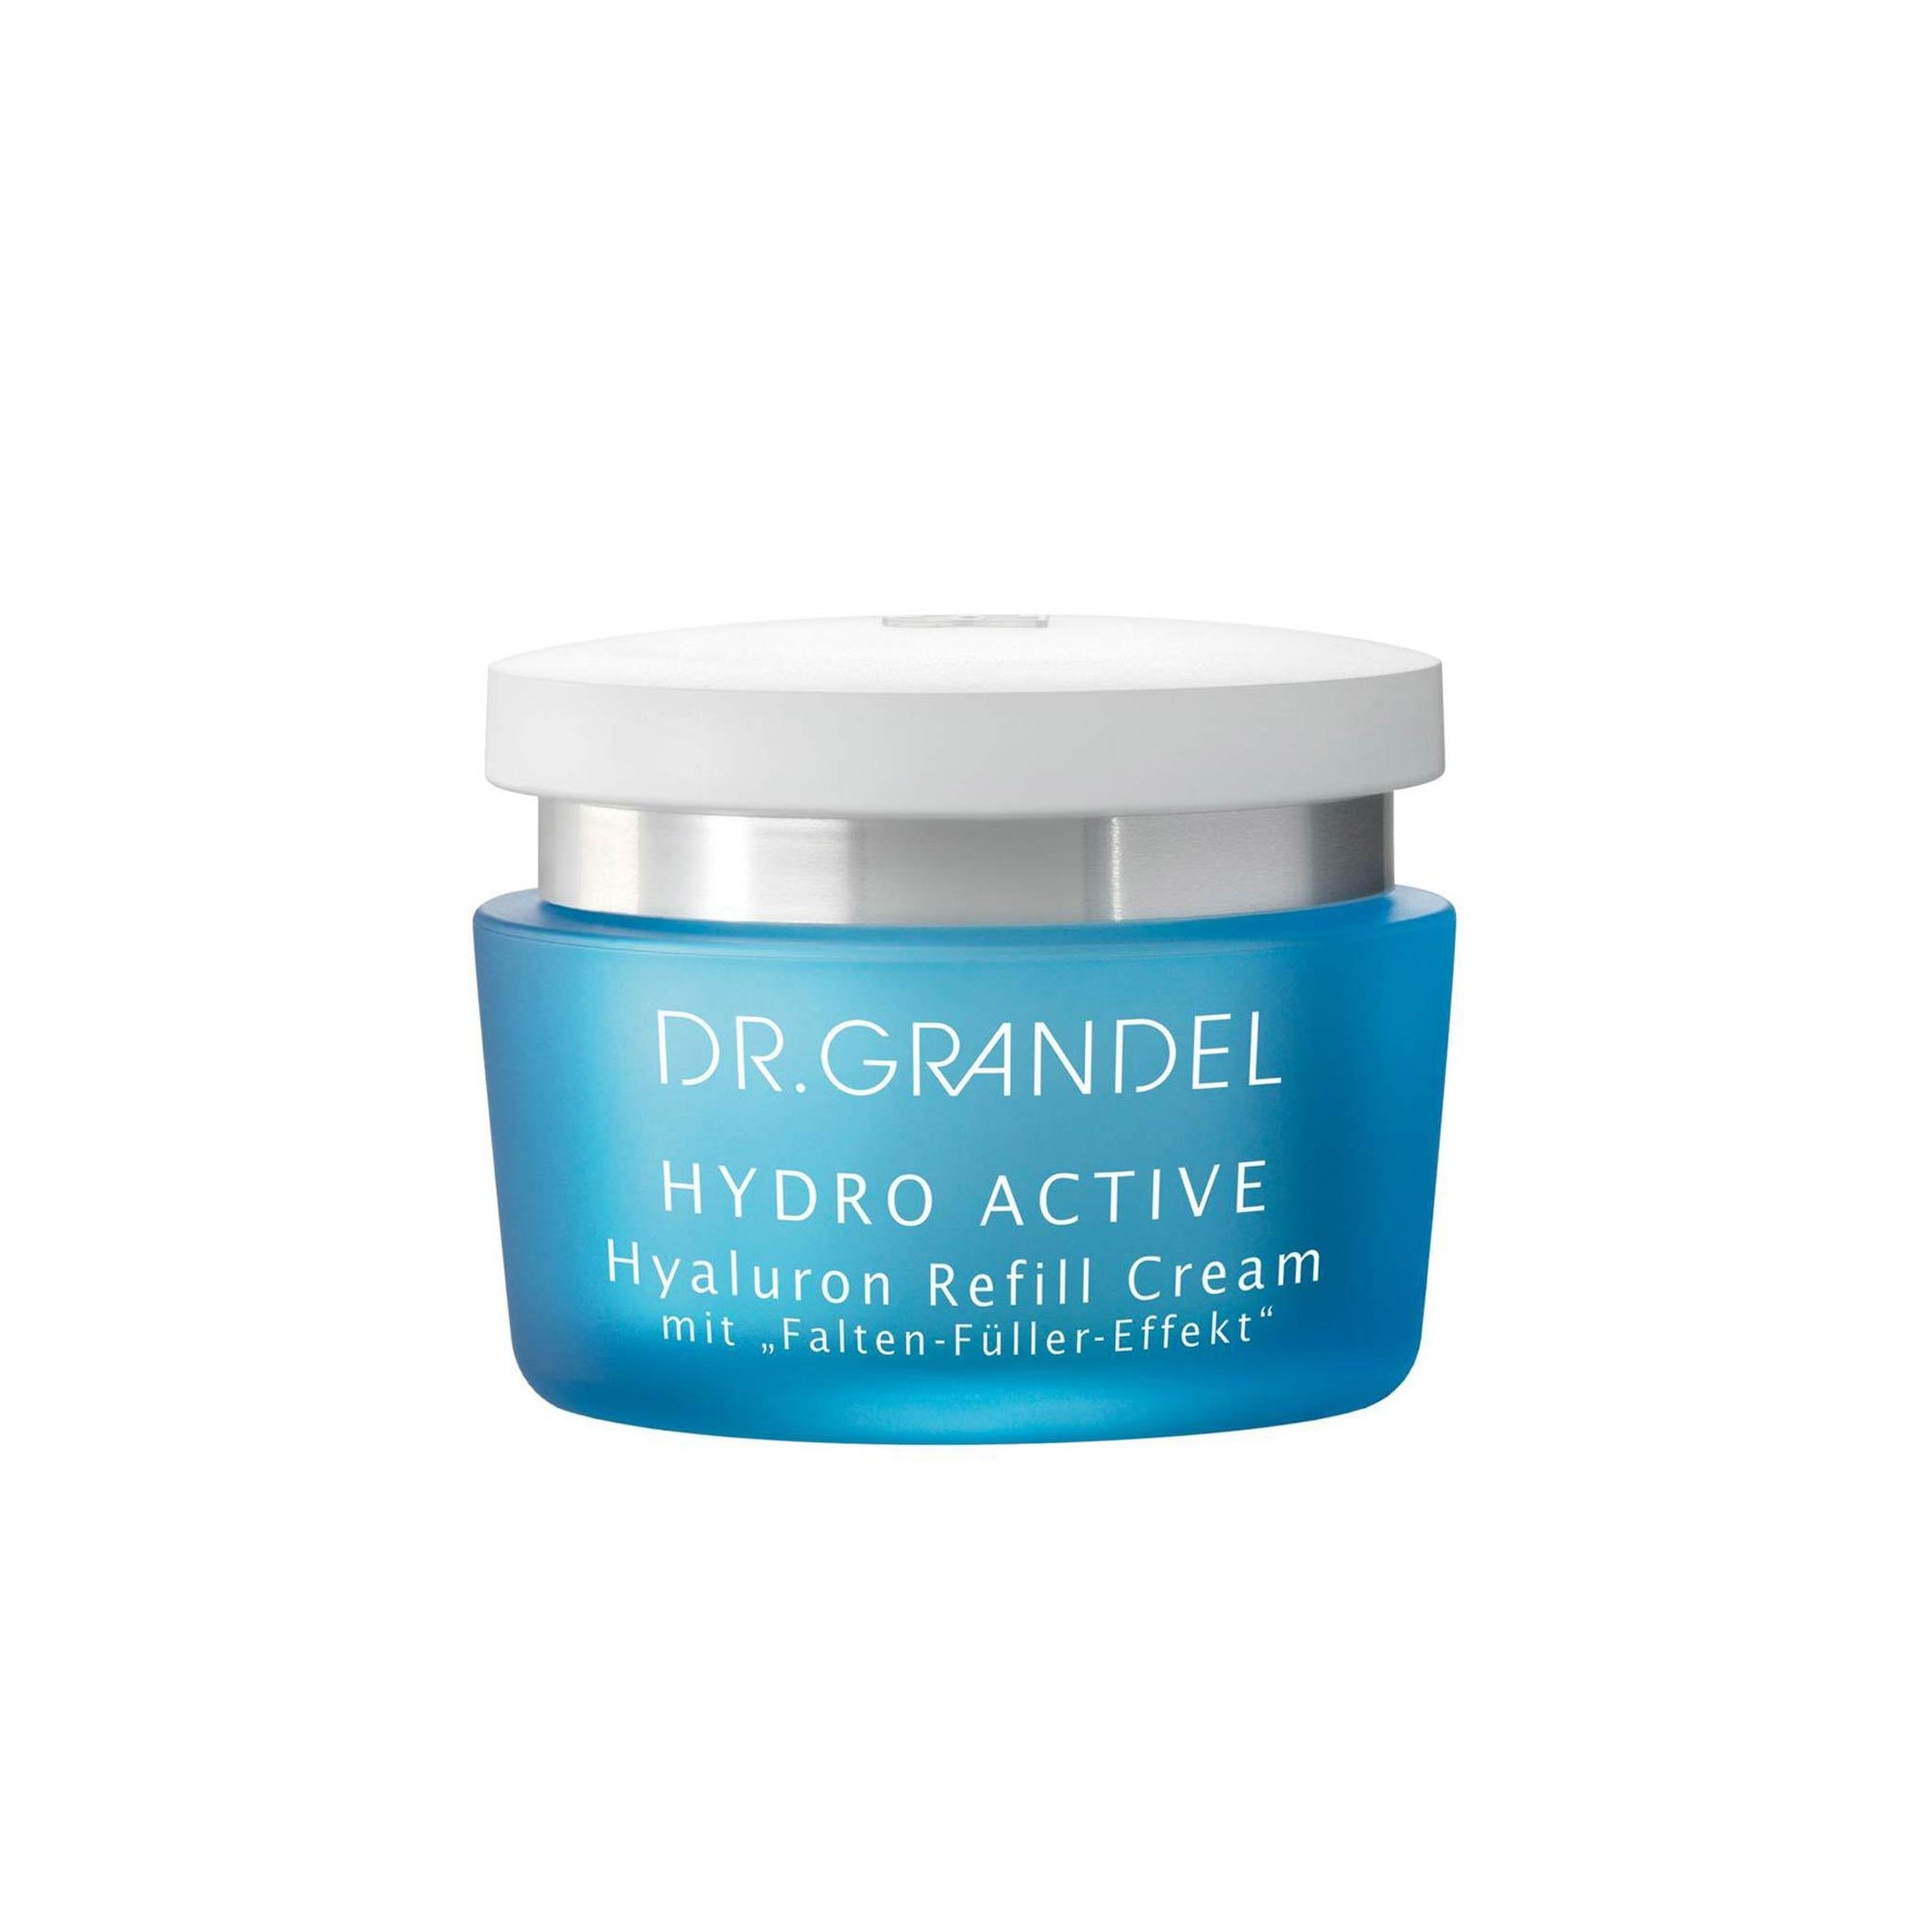 Dr Grandel Hydro Active Hyaluron Refill Cream 50ml